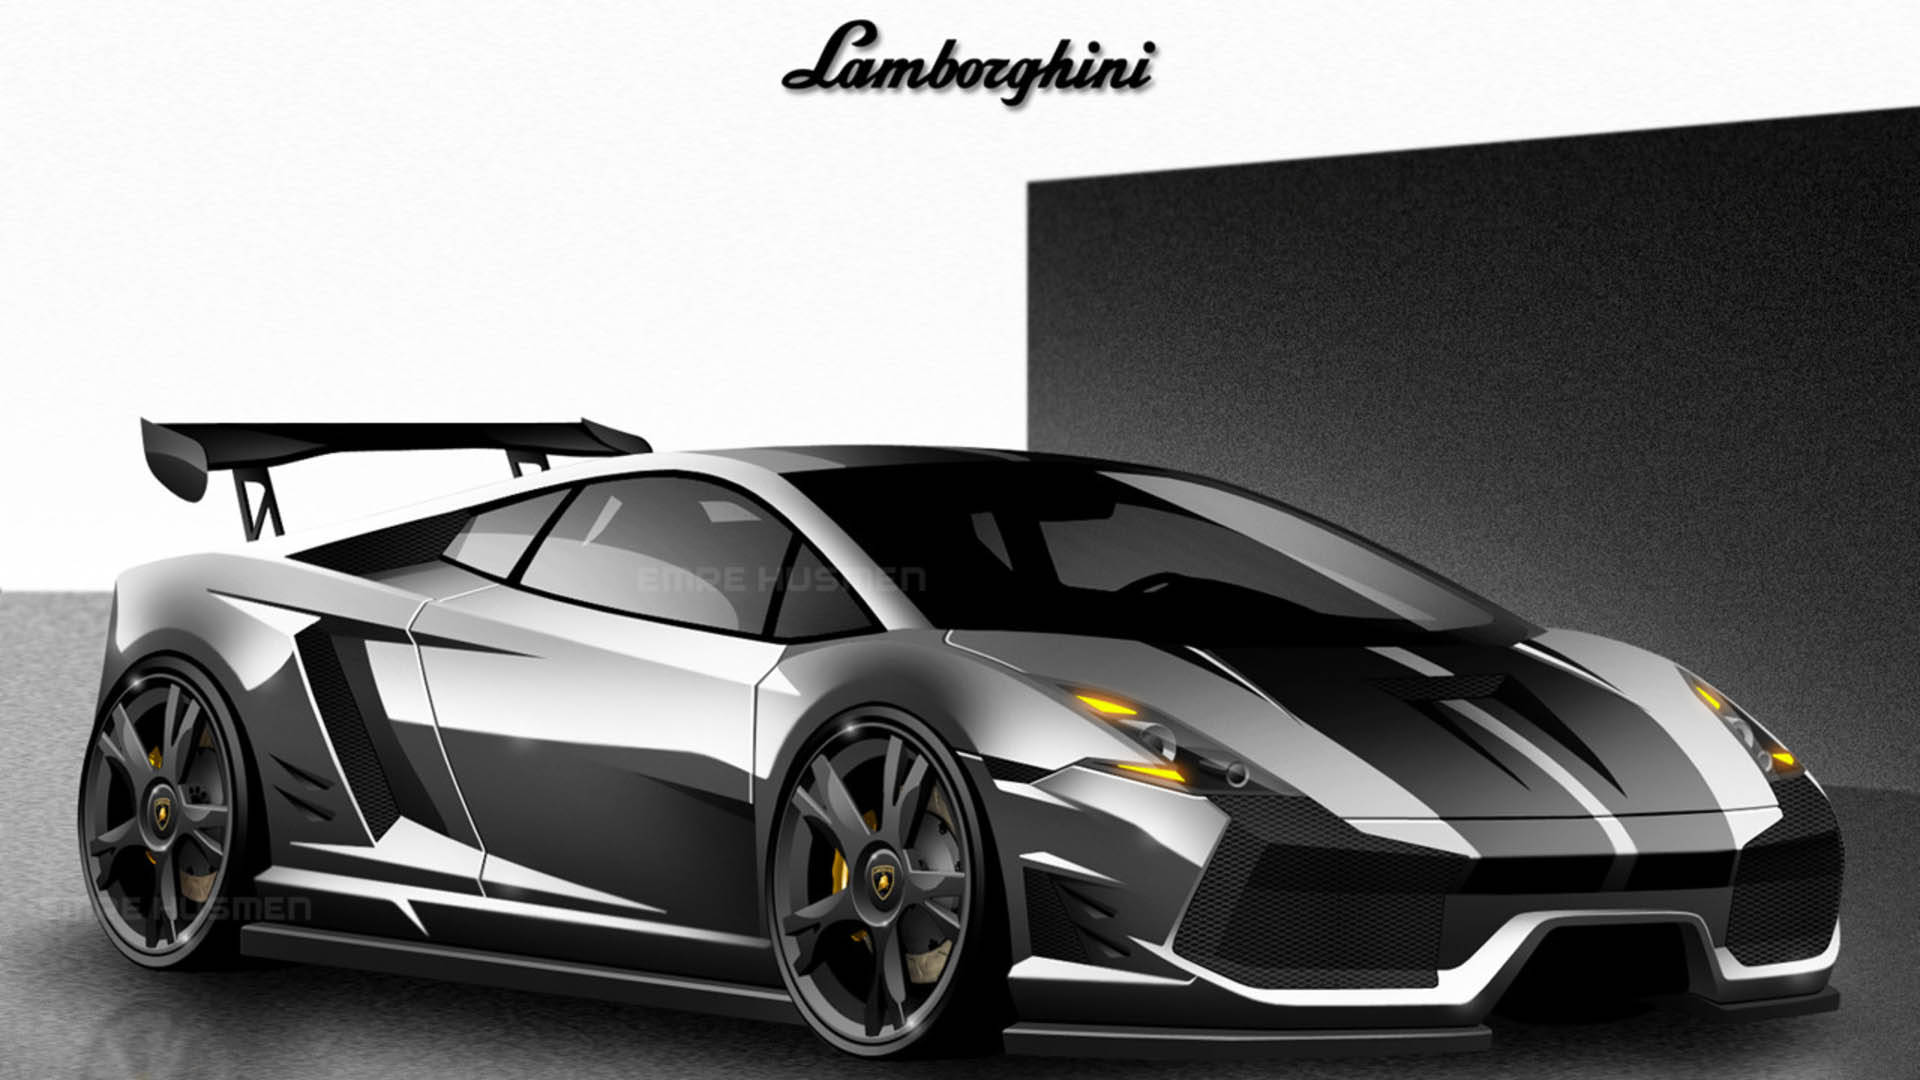 Genialerschwarzer Lamborghini Wallpaper